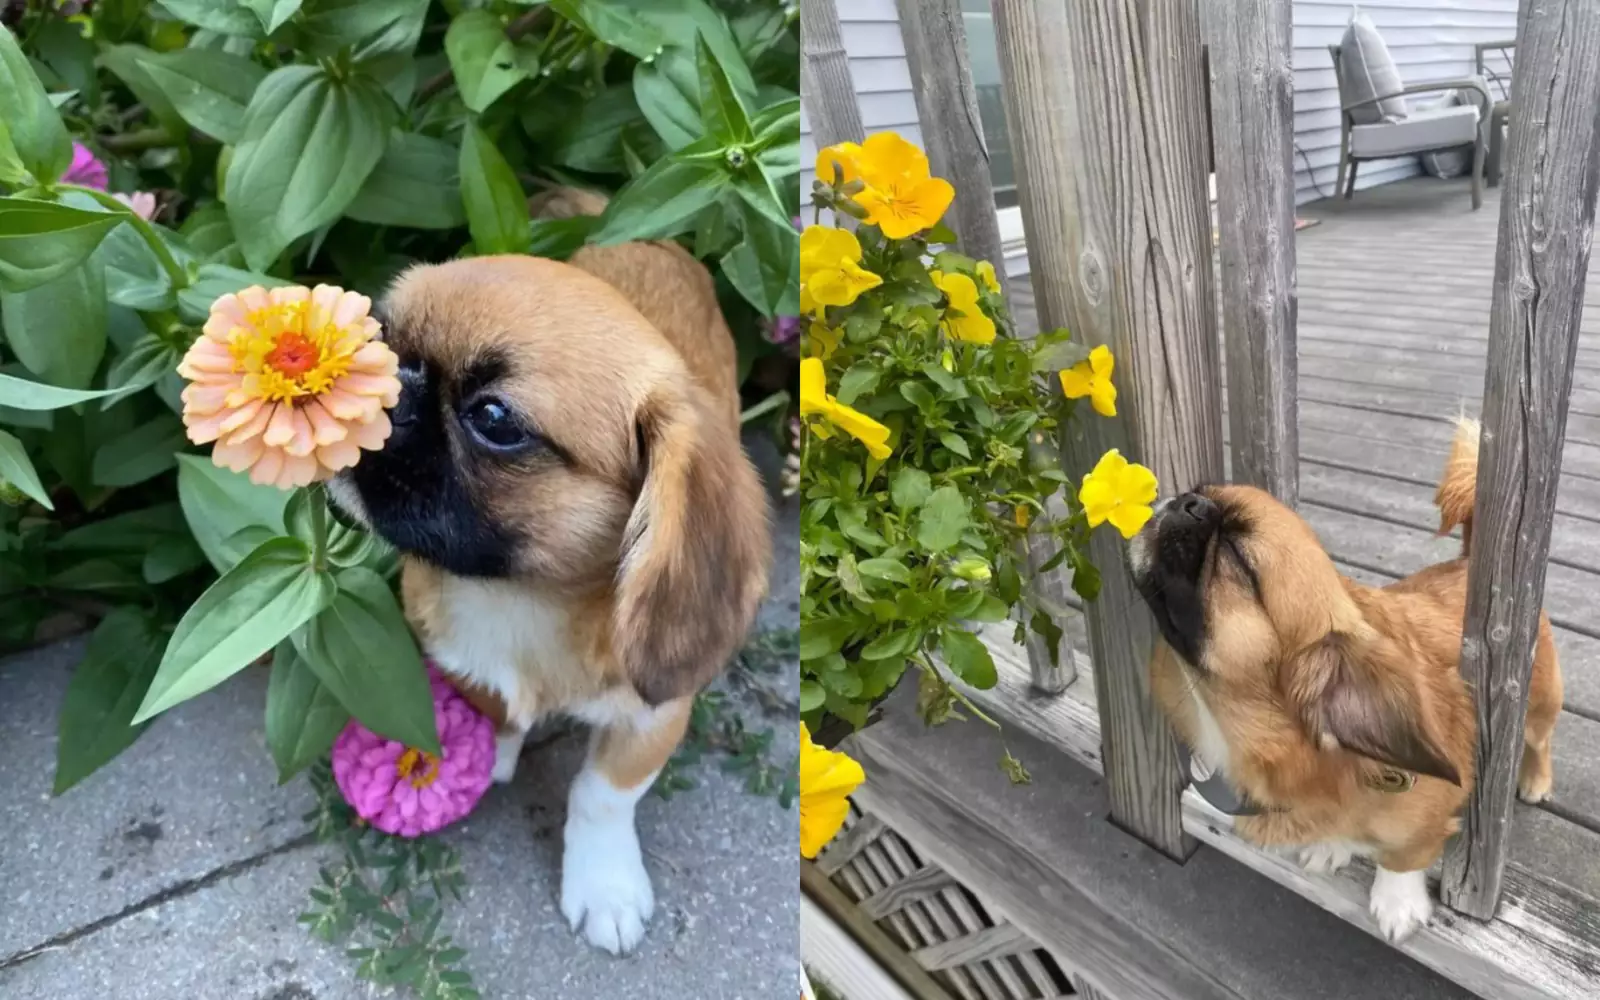 Финн обожает нюхать и рассматривать цветочки.